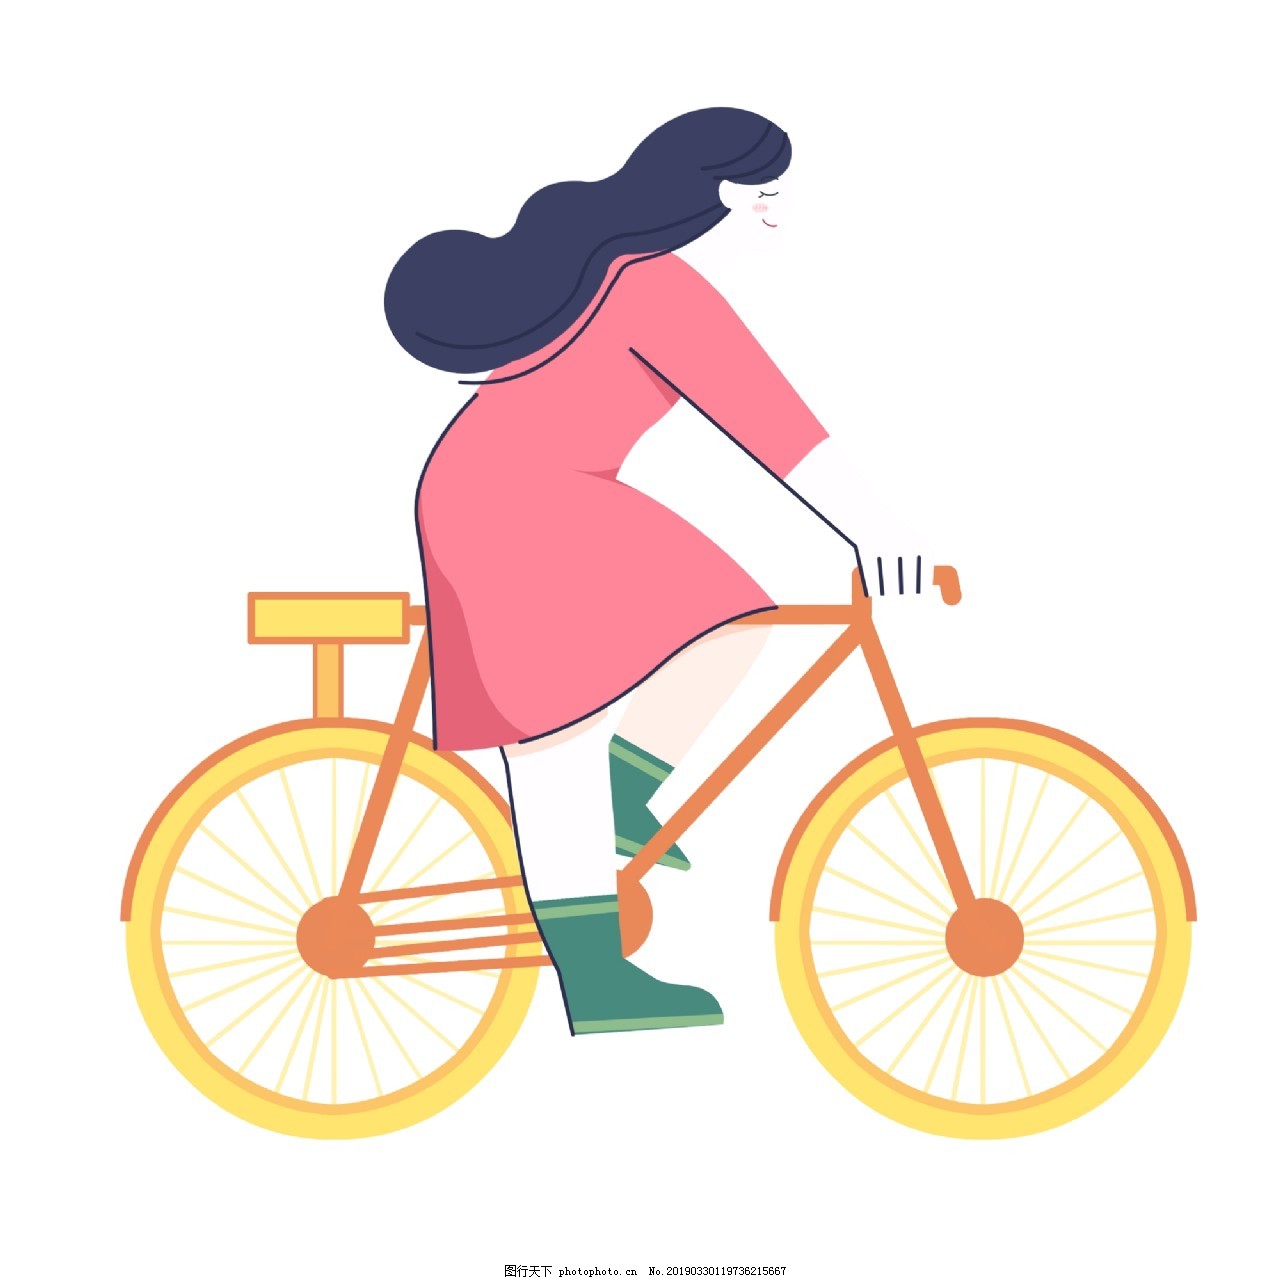 踩自行车的图片卡通_卡通人物骑自行车_微信公众号文章